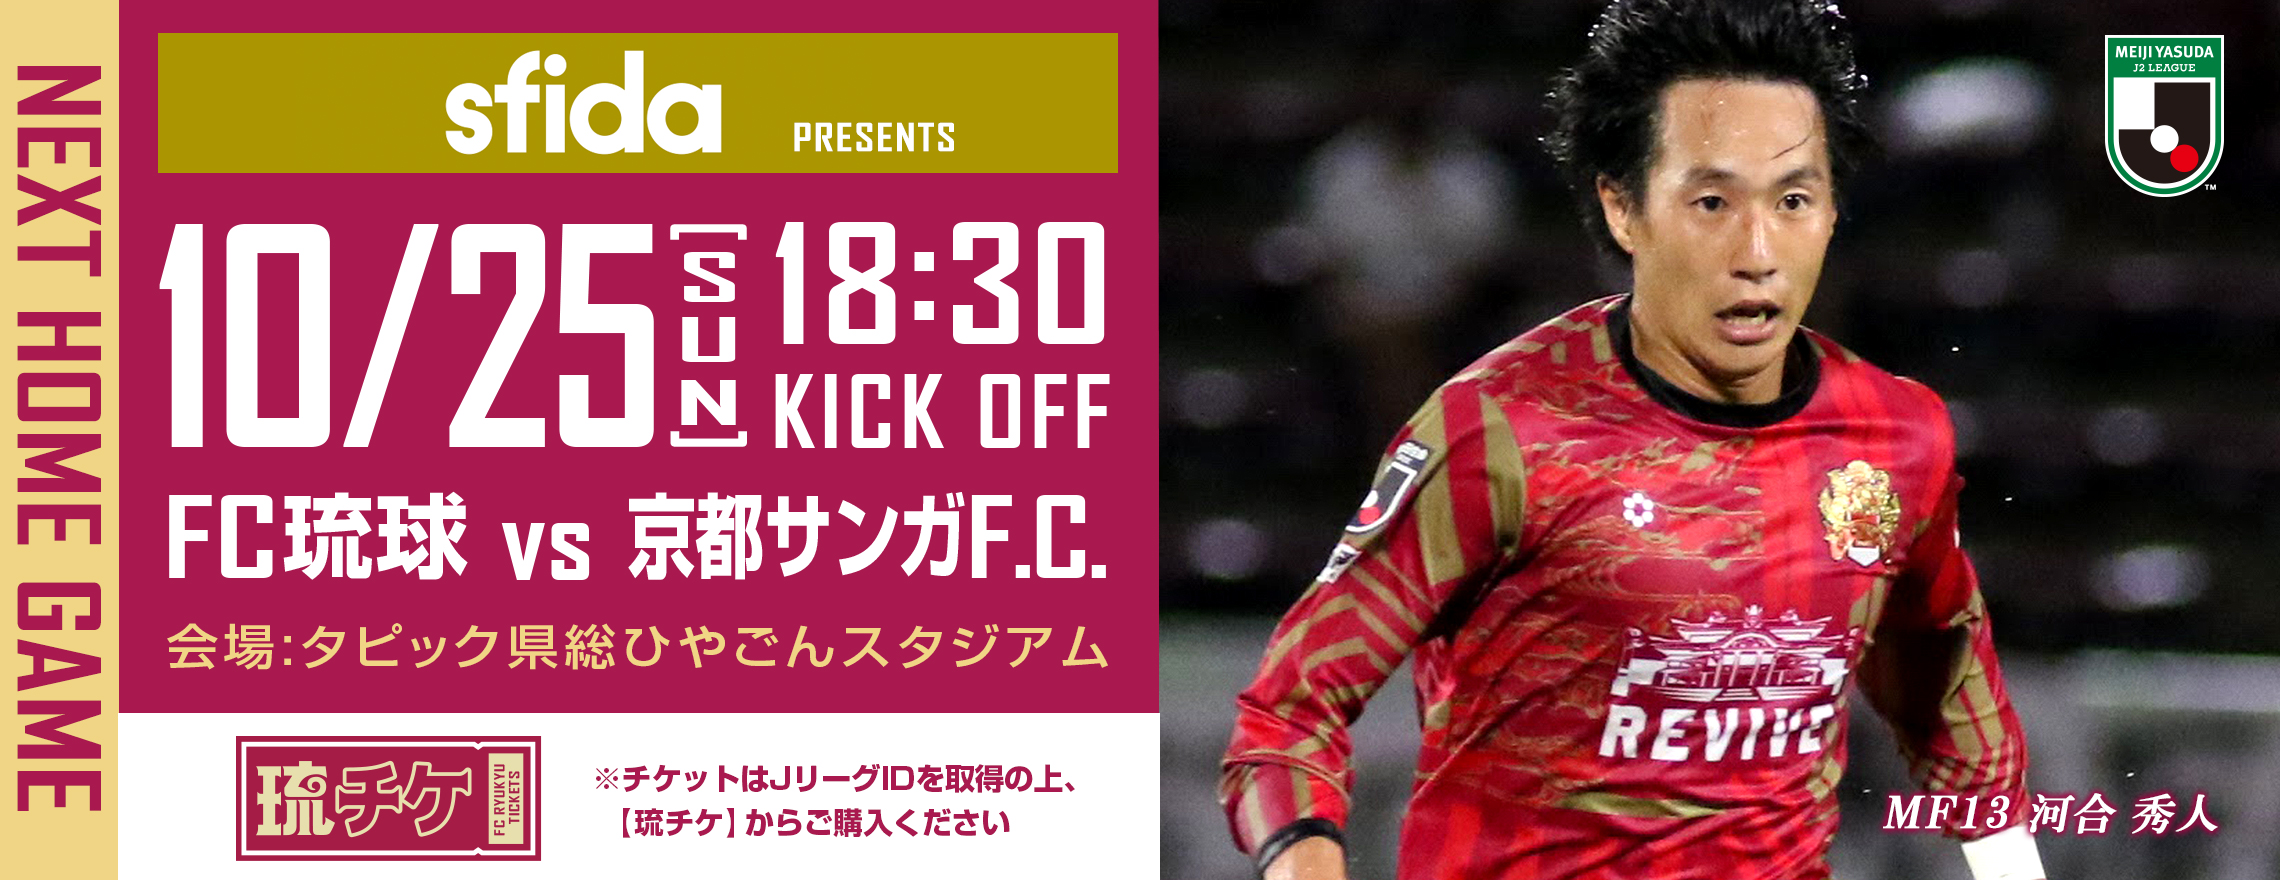 10 25 京都サンガf C 戦 Sfida スペシャルマッチデー 開催のおしらせ Fc琉球のプレスリリース